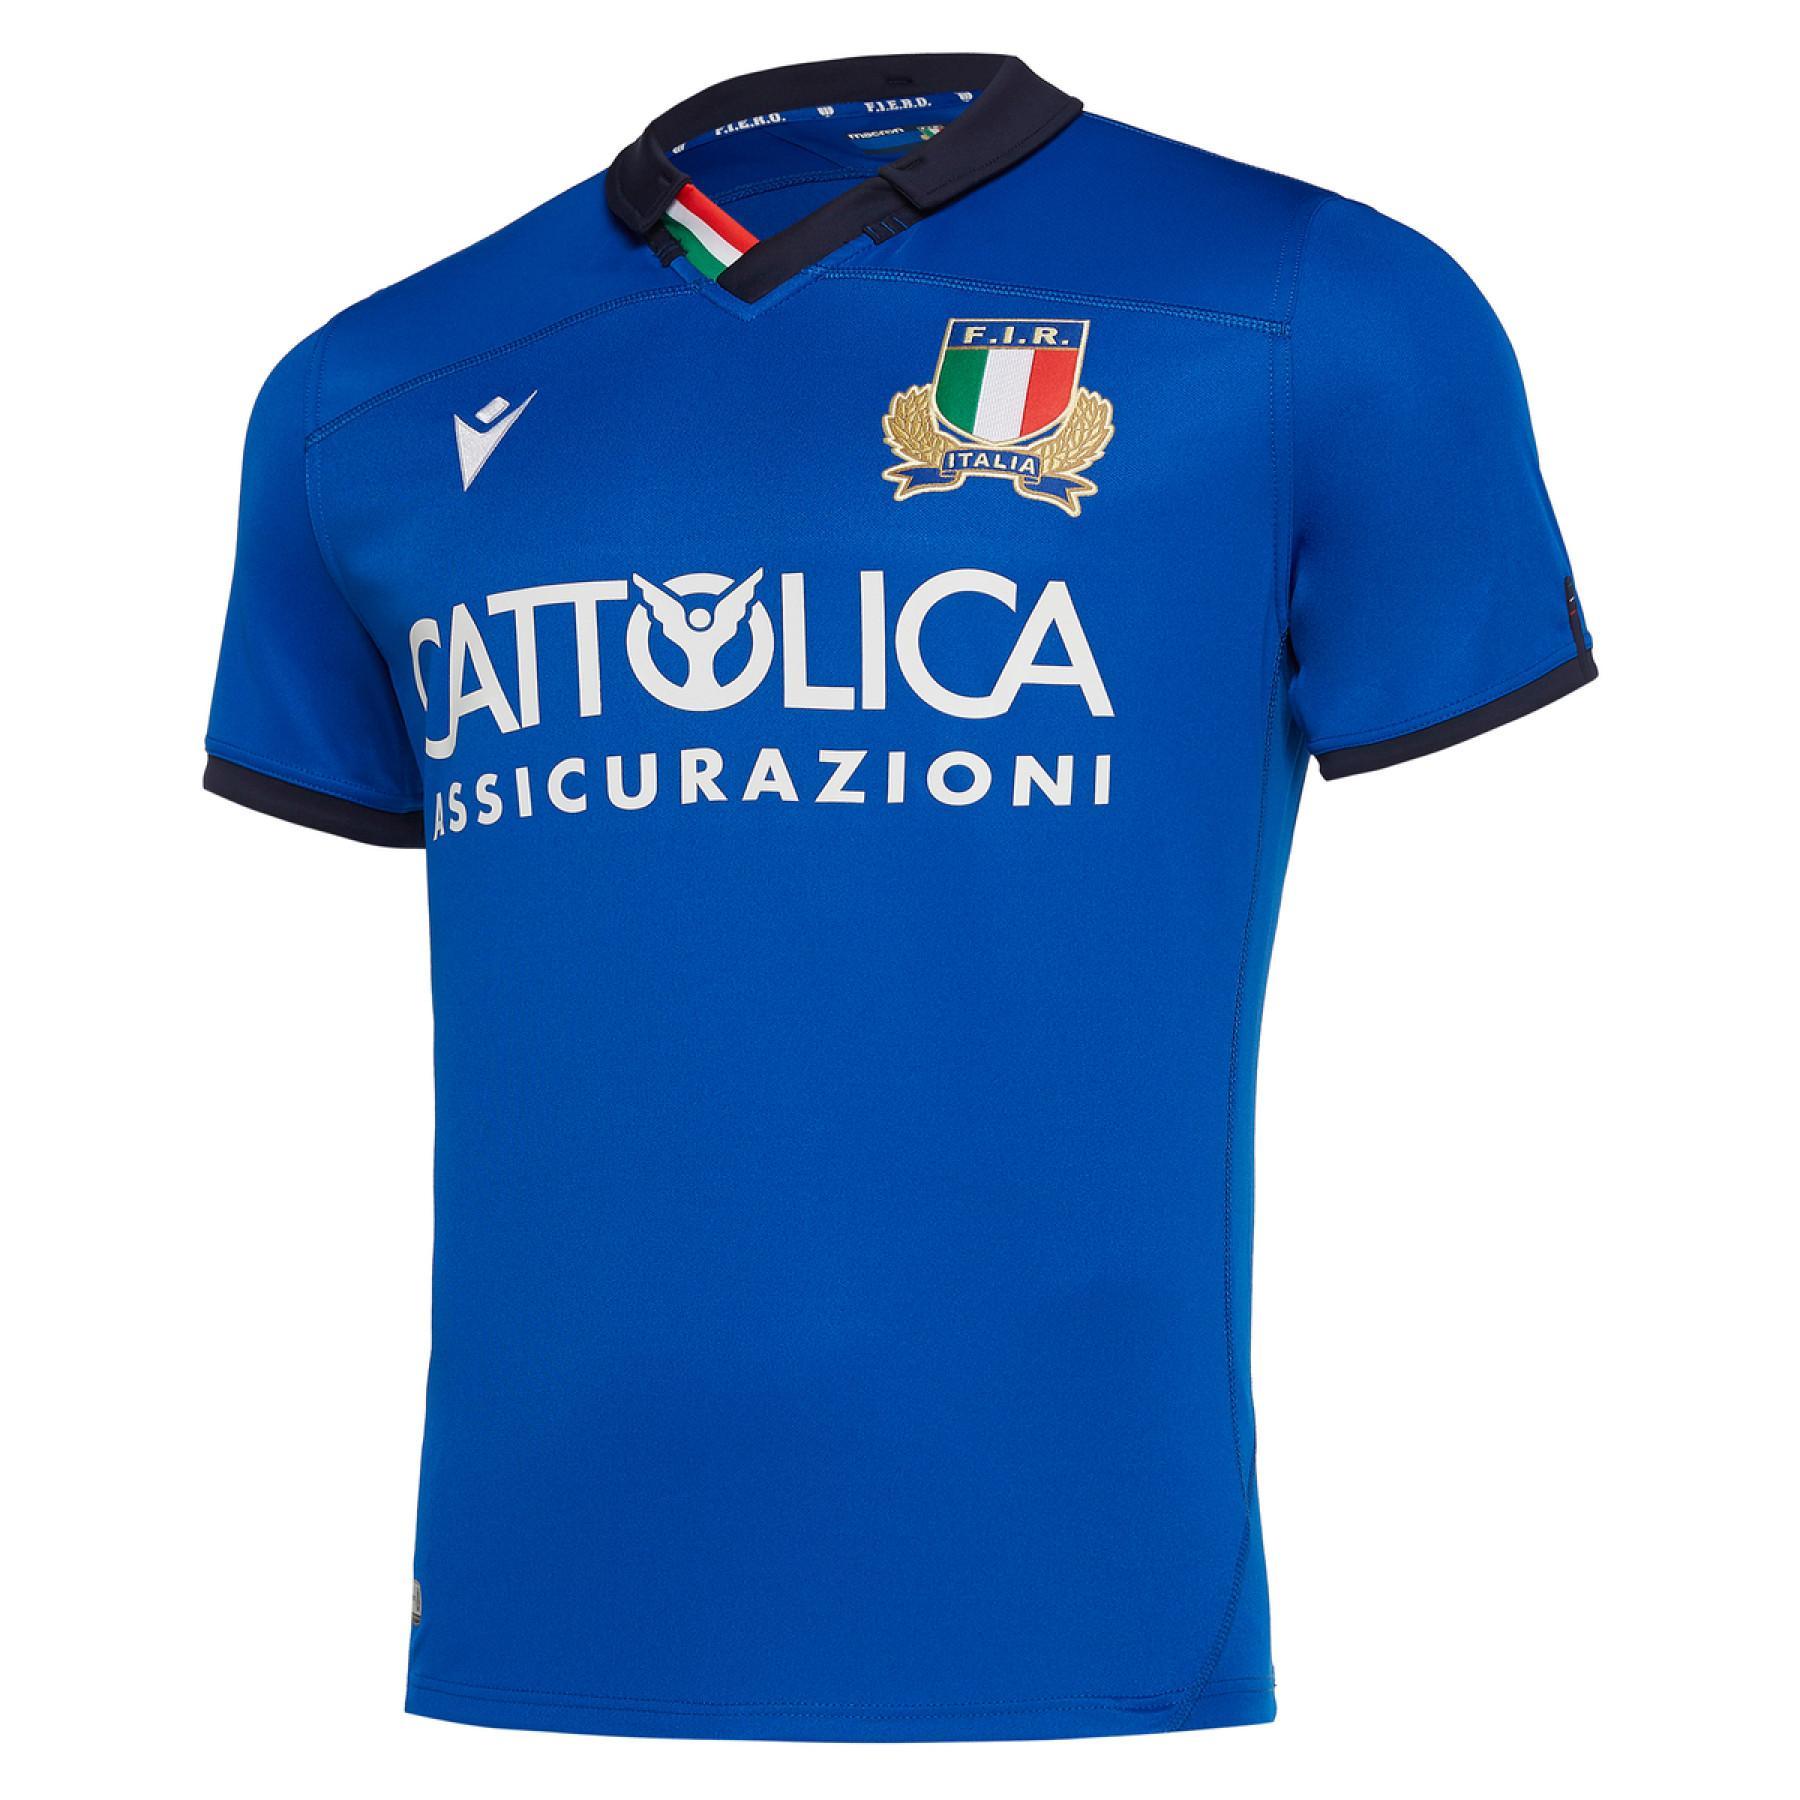 Maglia per la casa Italie rugby 2019